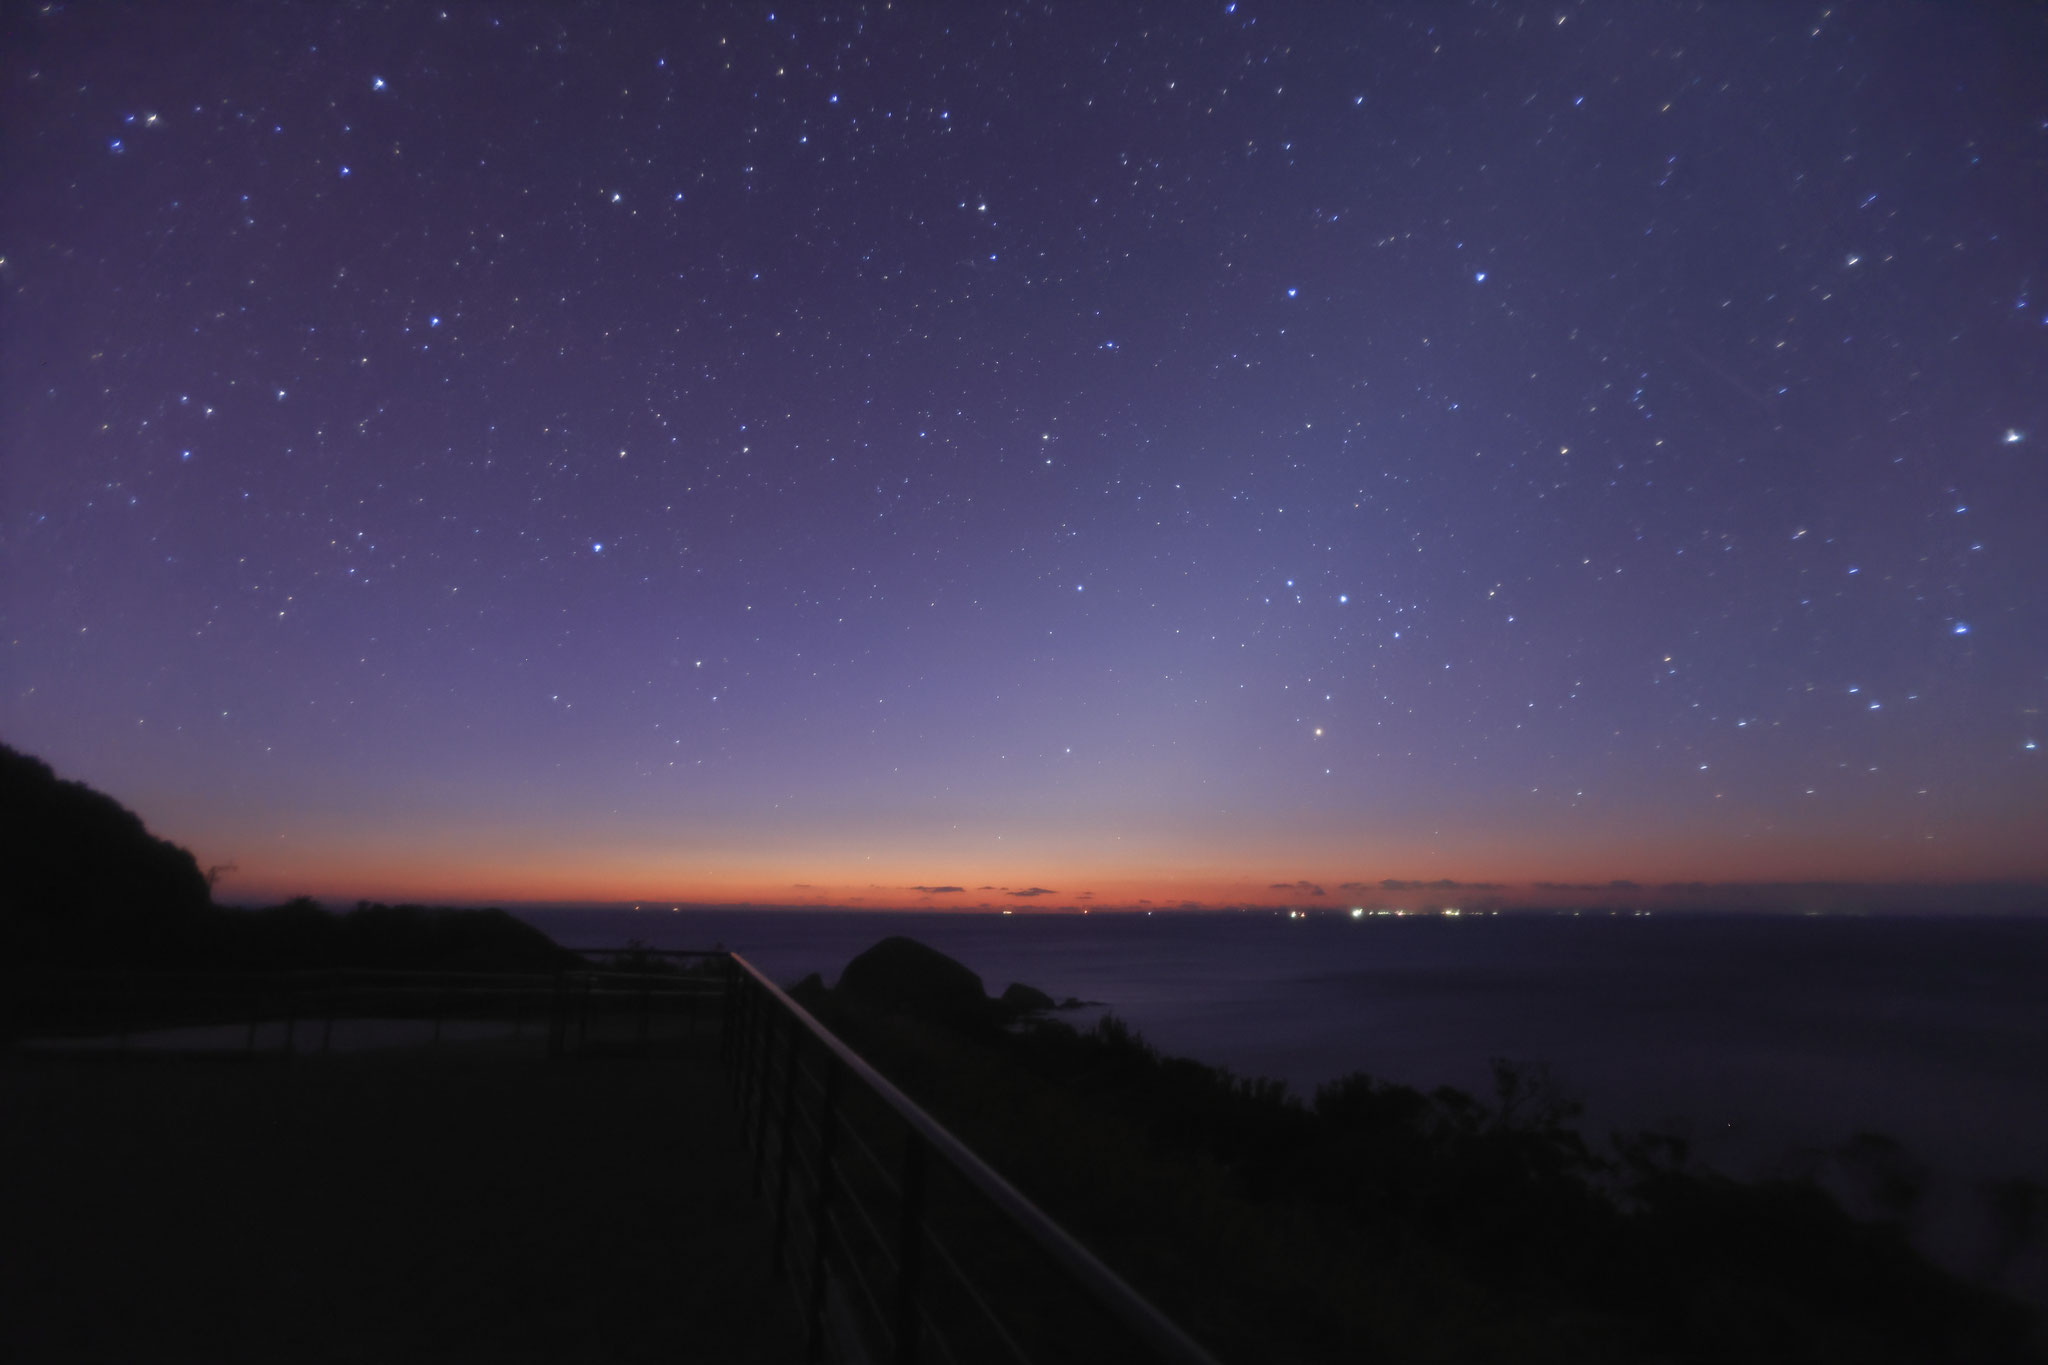 朝と夜の美しい空の境界線(1月4日 南大隅町)